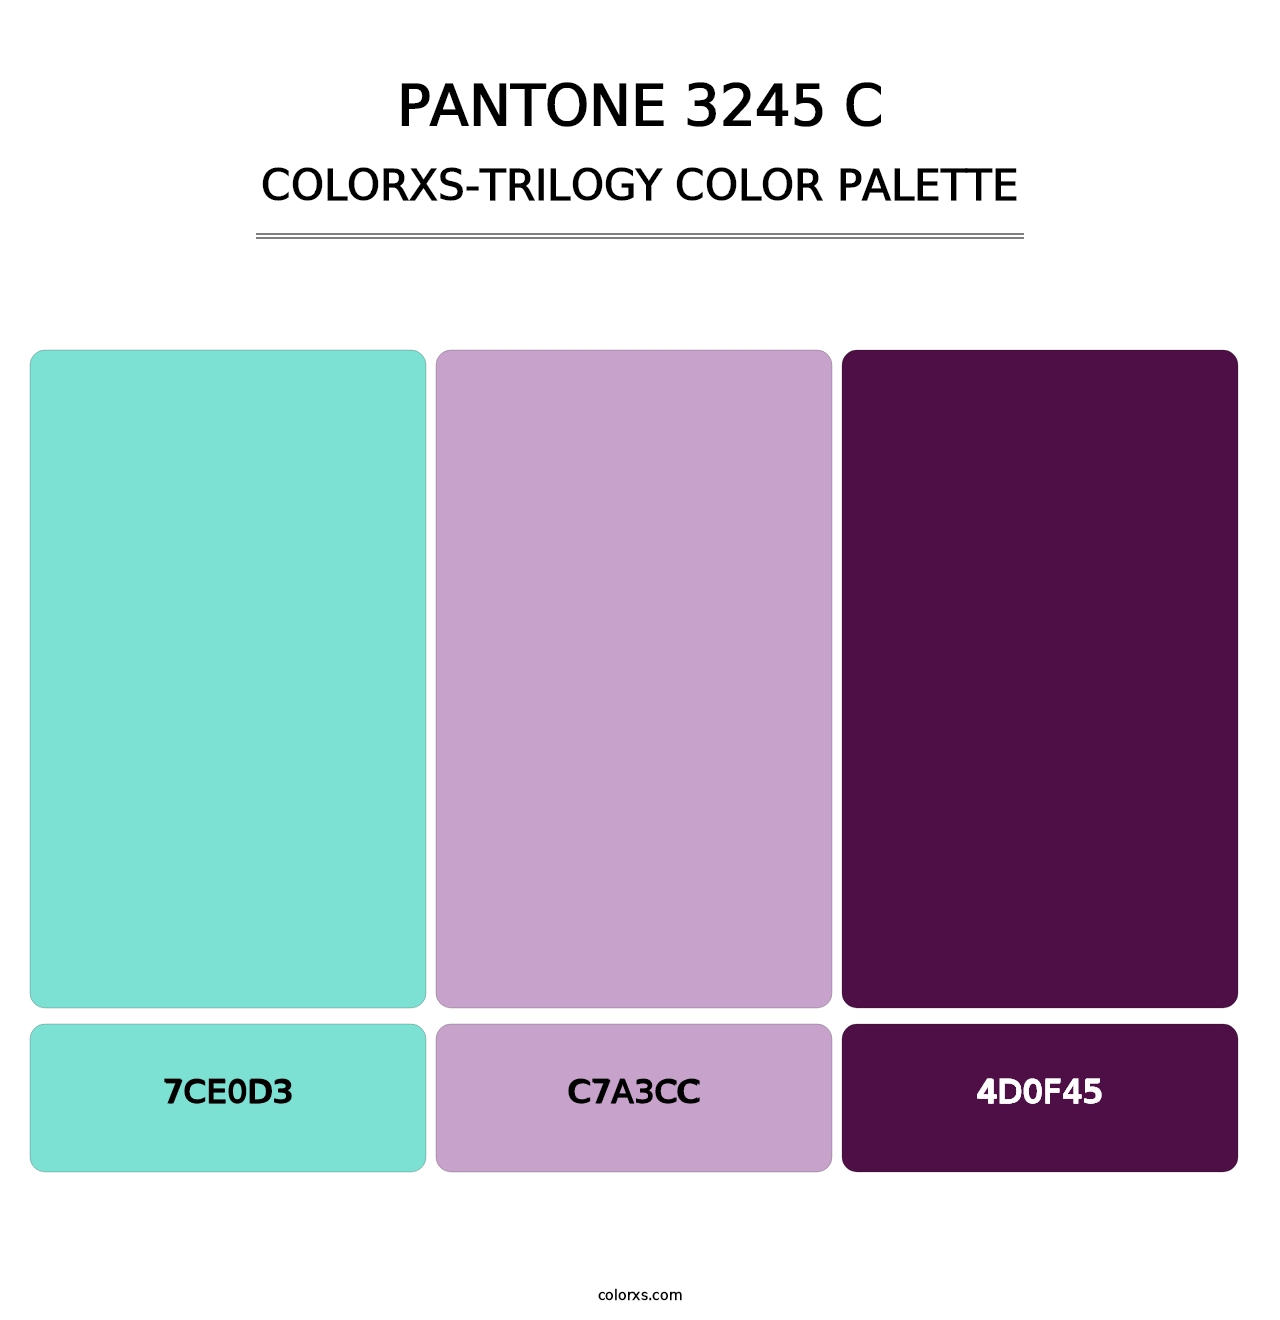 PANTONE 3245 C - Colorxs Trilogy Palette